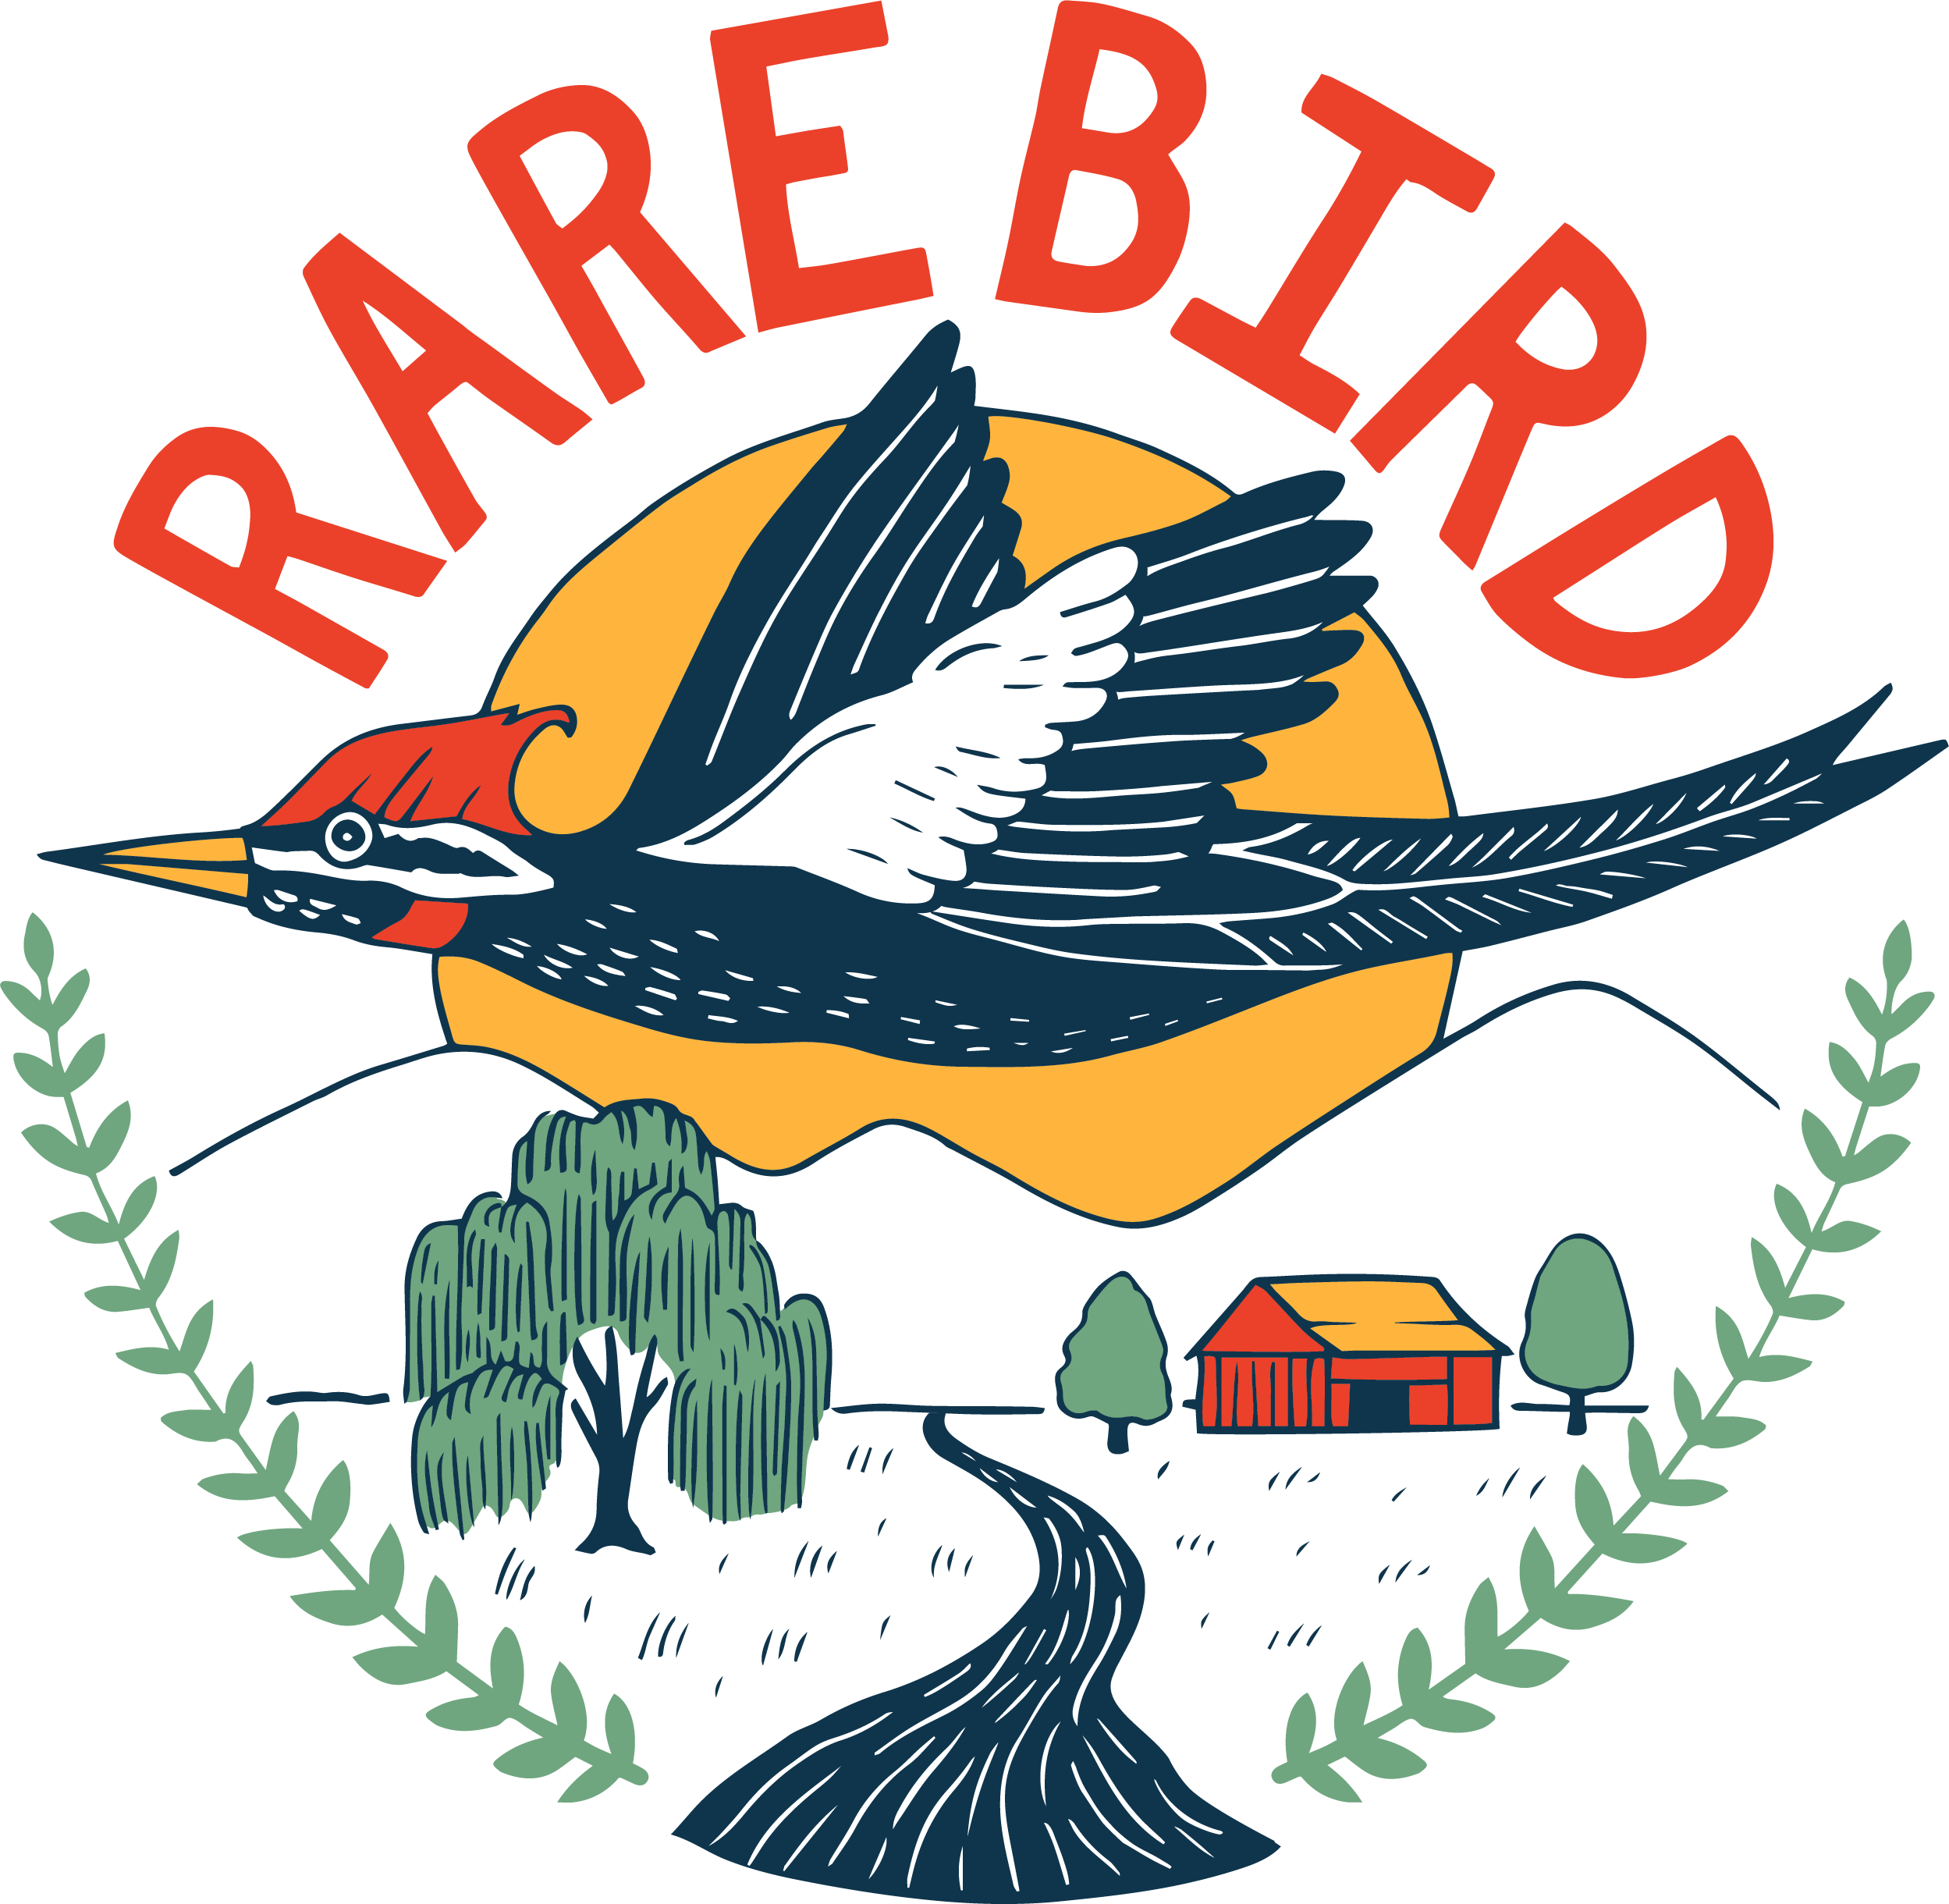 Rare Bird Farm